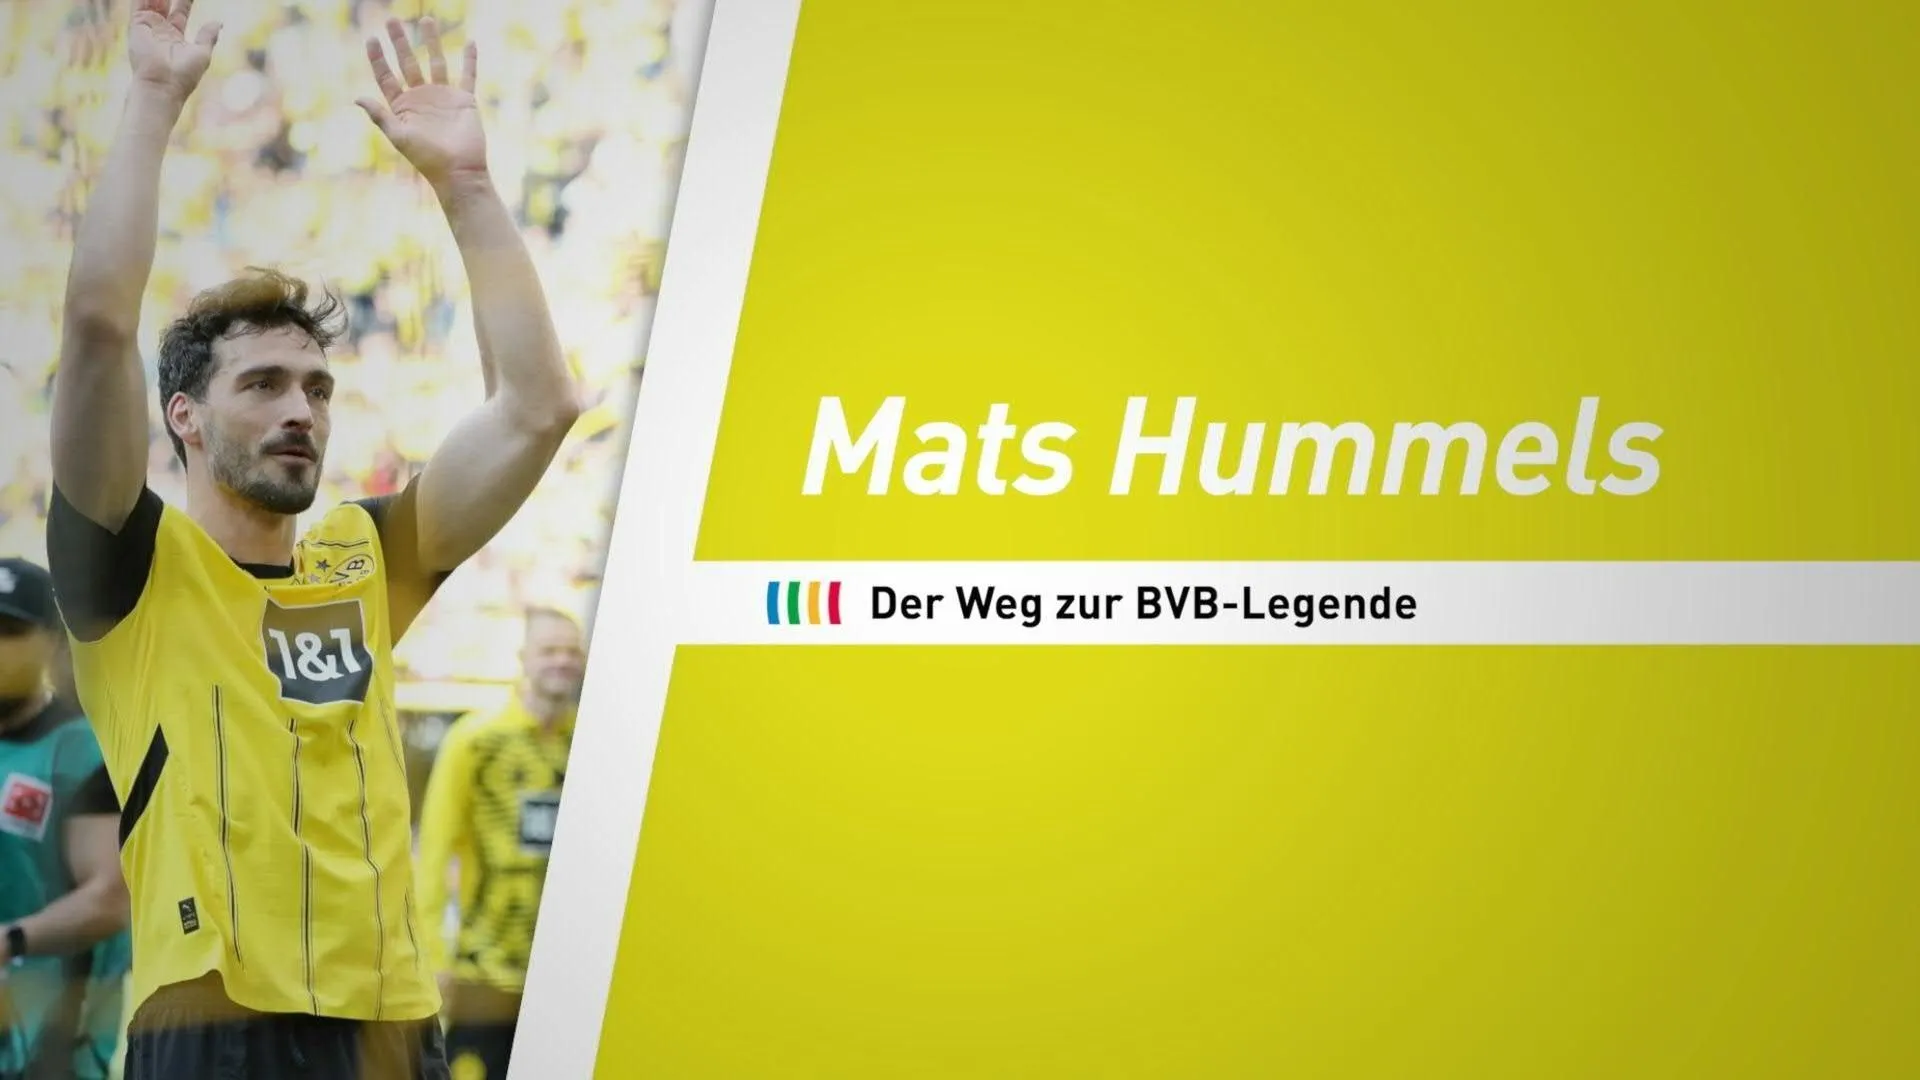 Mats Hummels: Der Weg zur BVB-Legende